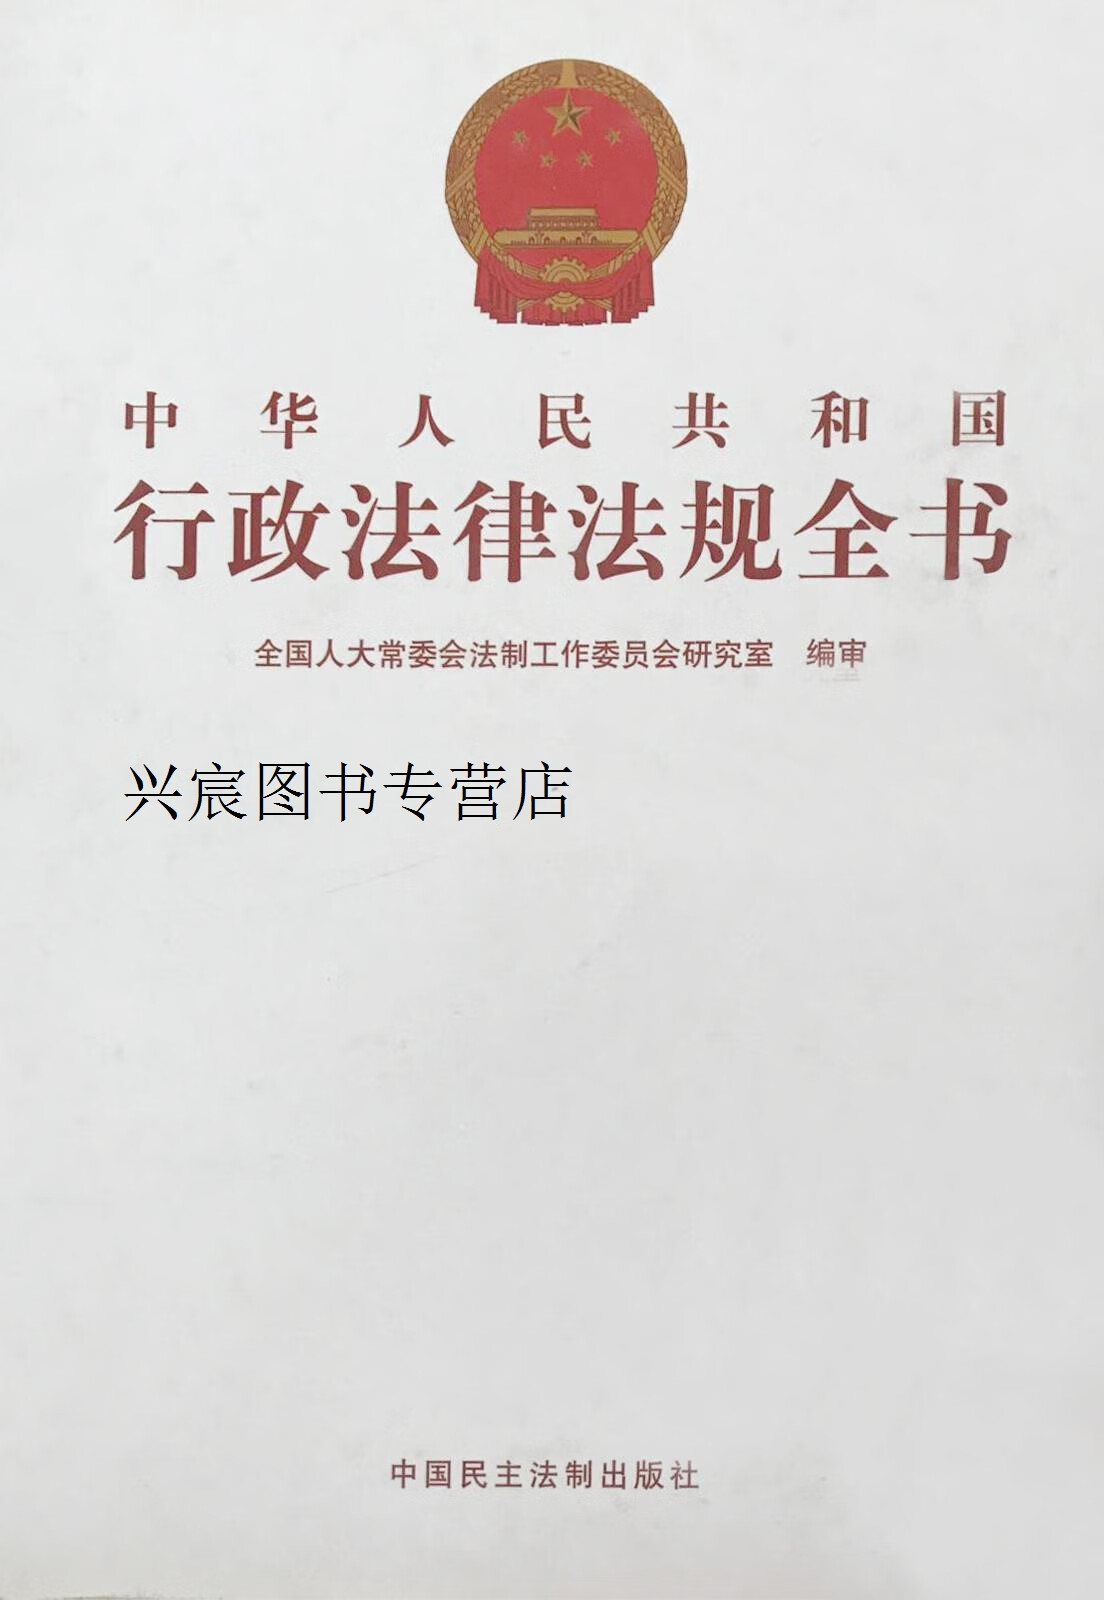 中华人民共和国行政法律法规全书 十二册,全国人大常委会,中国民主